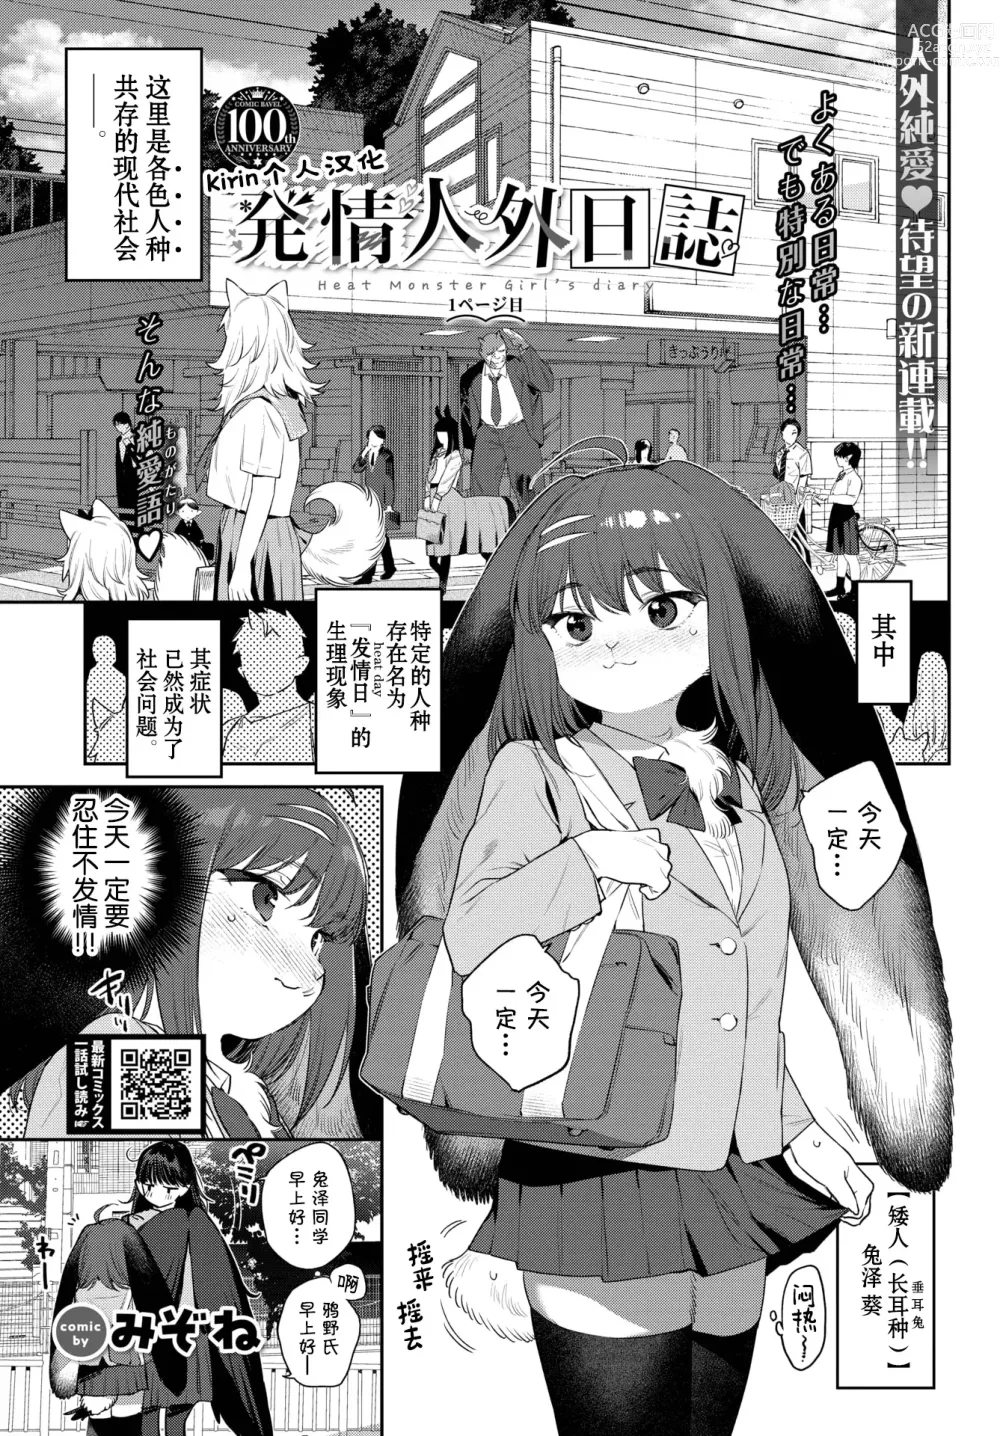 Page 1 of manga Hatsujou Jingai Nisshi - Heat Monster Girls diary Page 1